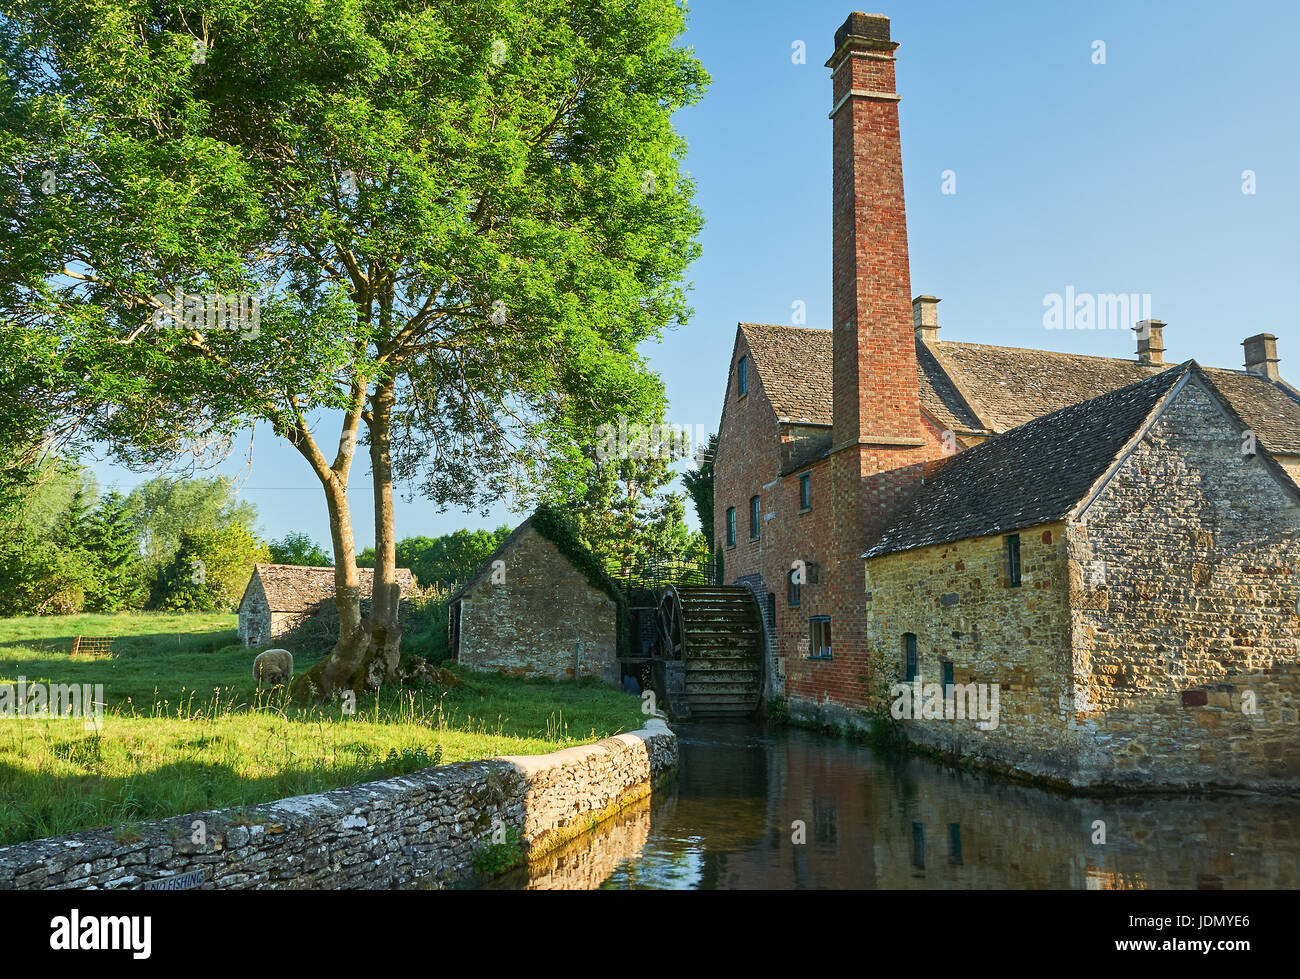 Wassermühle am Fluss Auge in die malerischen Cotswolds Dorf von Lower Slaughter, Gloucestershire. Stockfoto